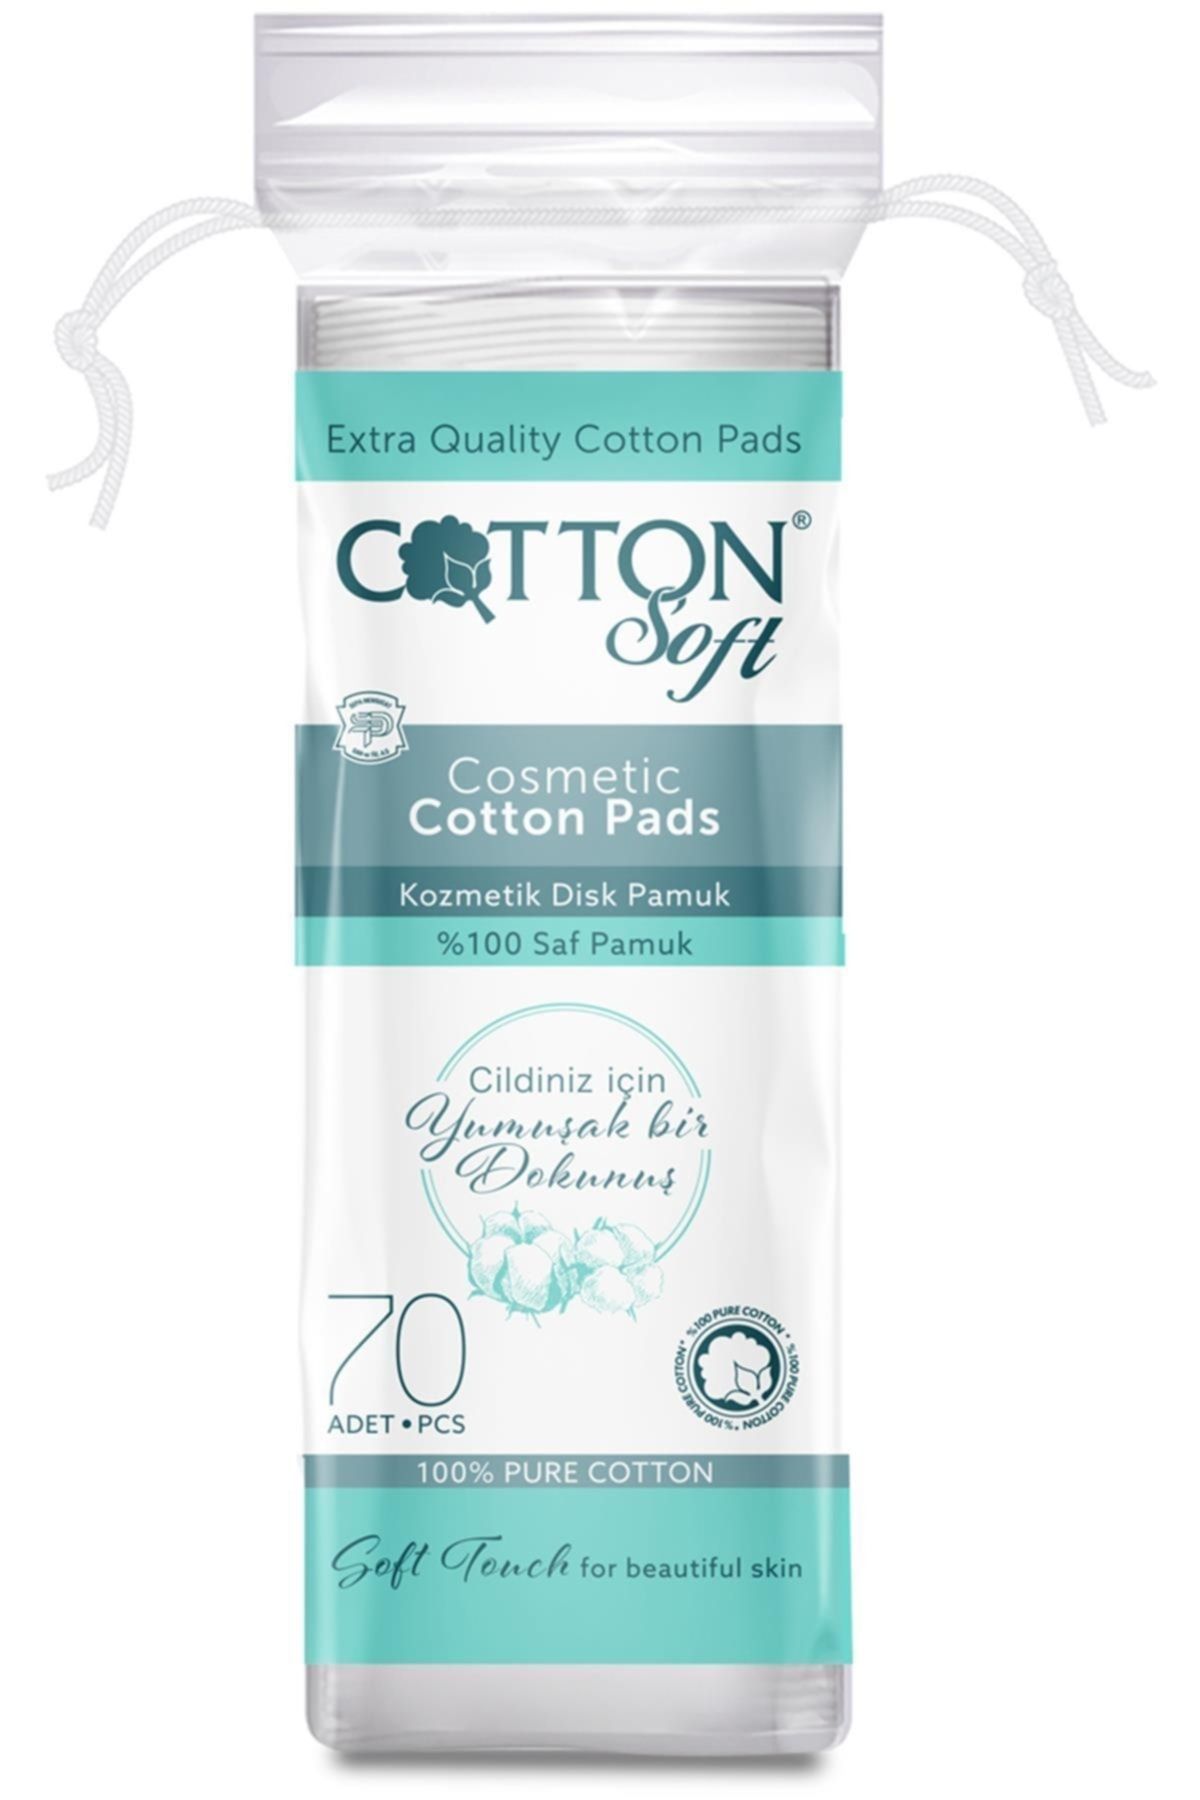 Cotton Soft Marka: Disk Makyaj Pamuğu 70 Adet Kategori: Pamuk & Disk